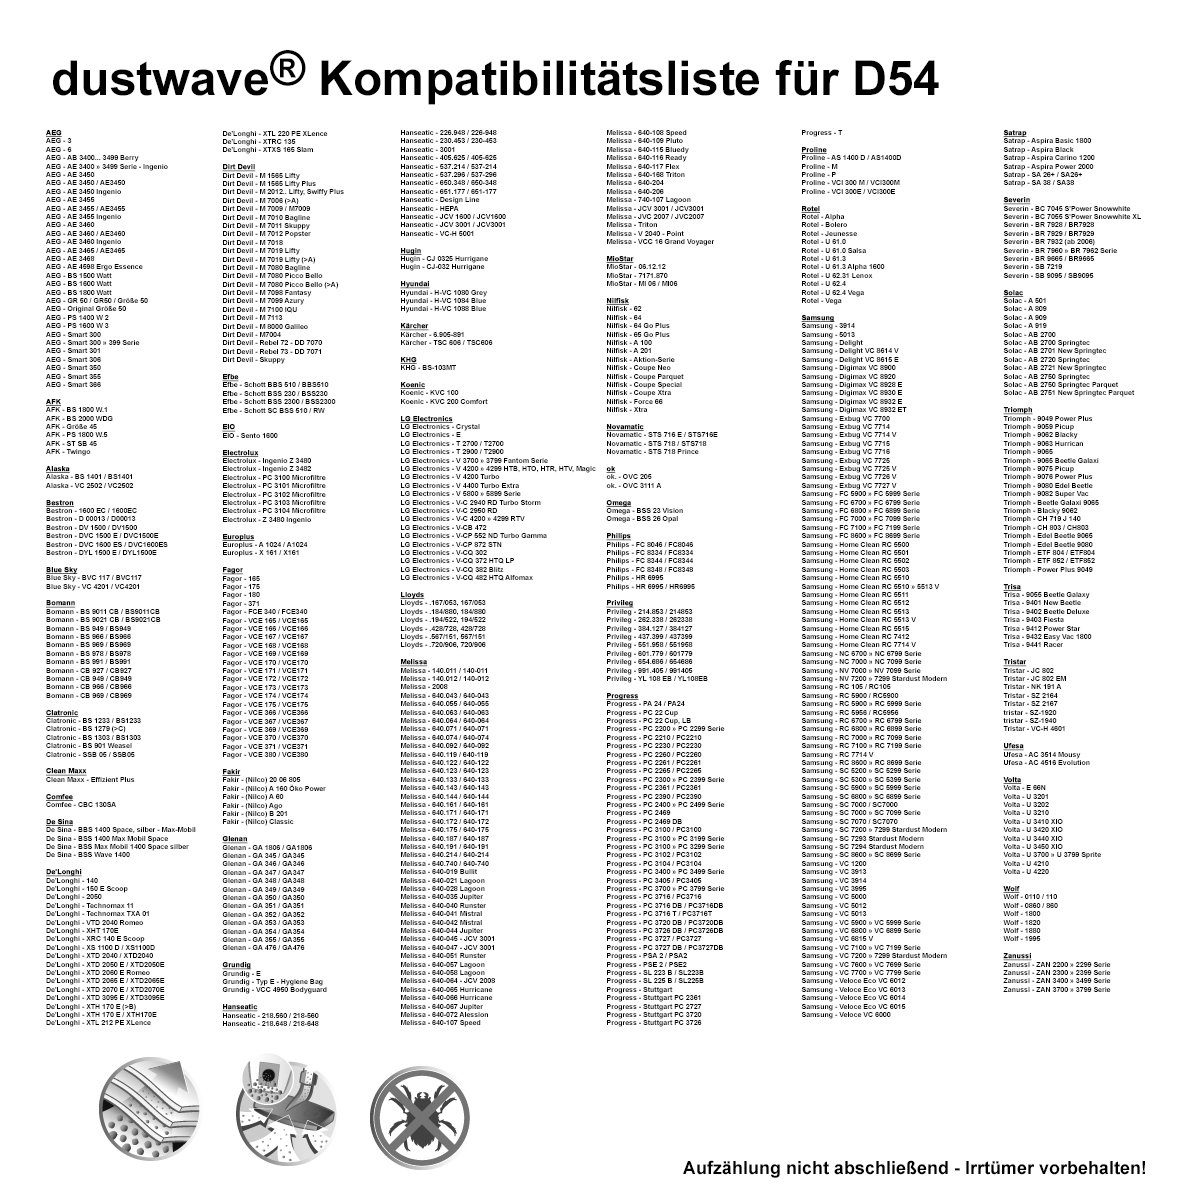 350 + für 2 20 / - Megapack, Megapack, 20 DIV350, passend DIV Staubsaugerbeutel DIV350 (ca. zuschneidbar) St., 350 / - DIV 15x15cm Hepa-Filter Aldi Aldi Premium Dustwave Staubsaugerbeutel